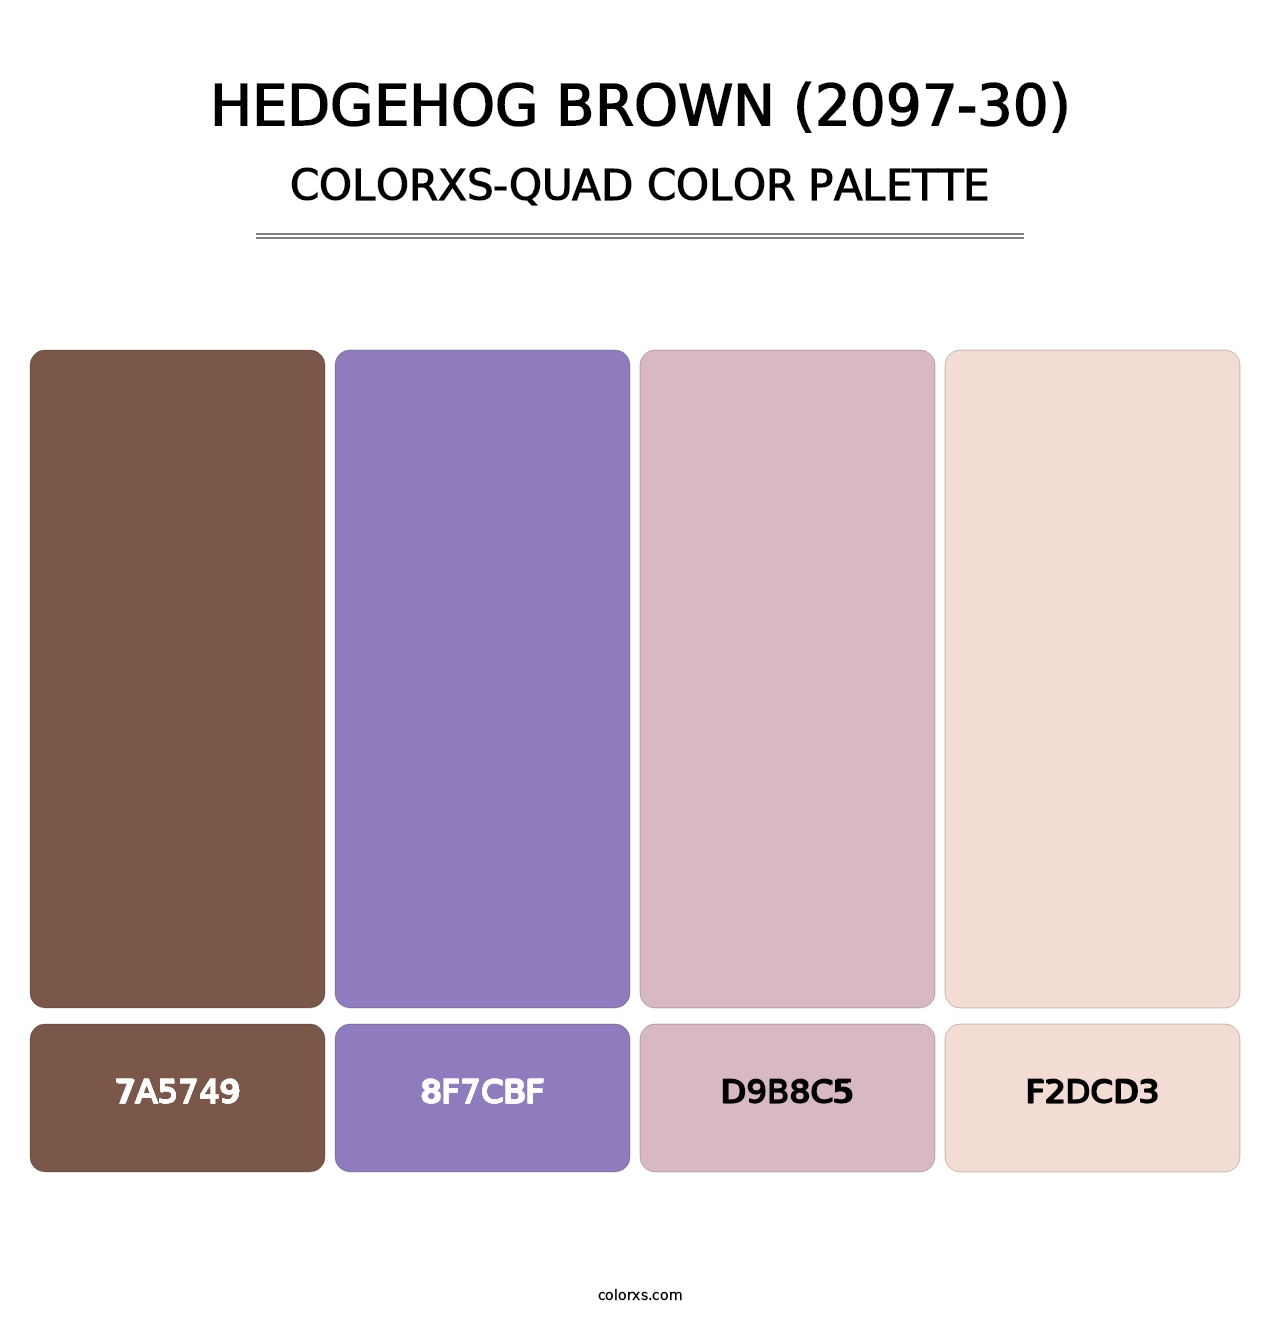 Hedgehog Brown (2097-30) - Colorxs Quad Palette